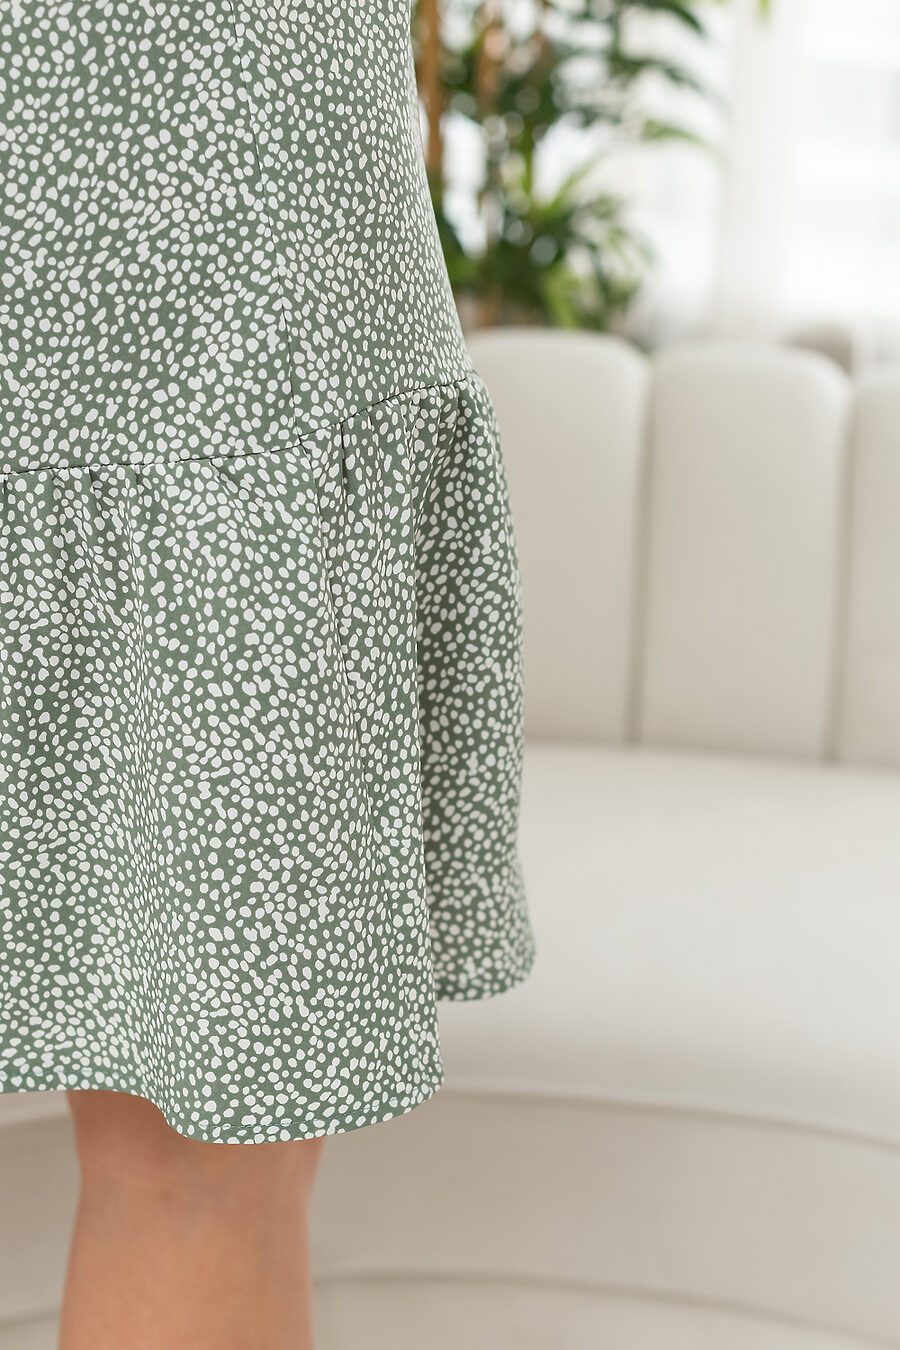 Платье П-4 для женщин НАТАЛИ 796200 купить оптом от производителя. Совместная покупка женской одежды в OptMoyo